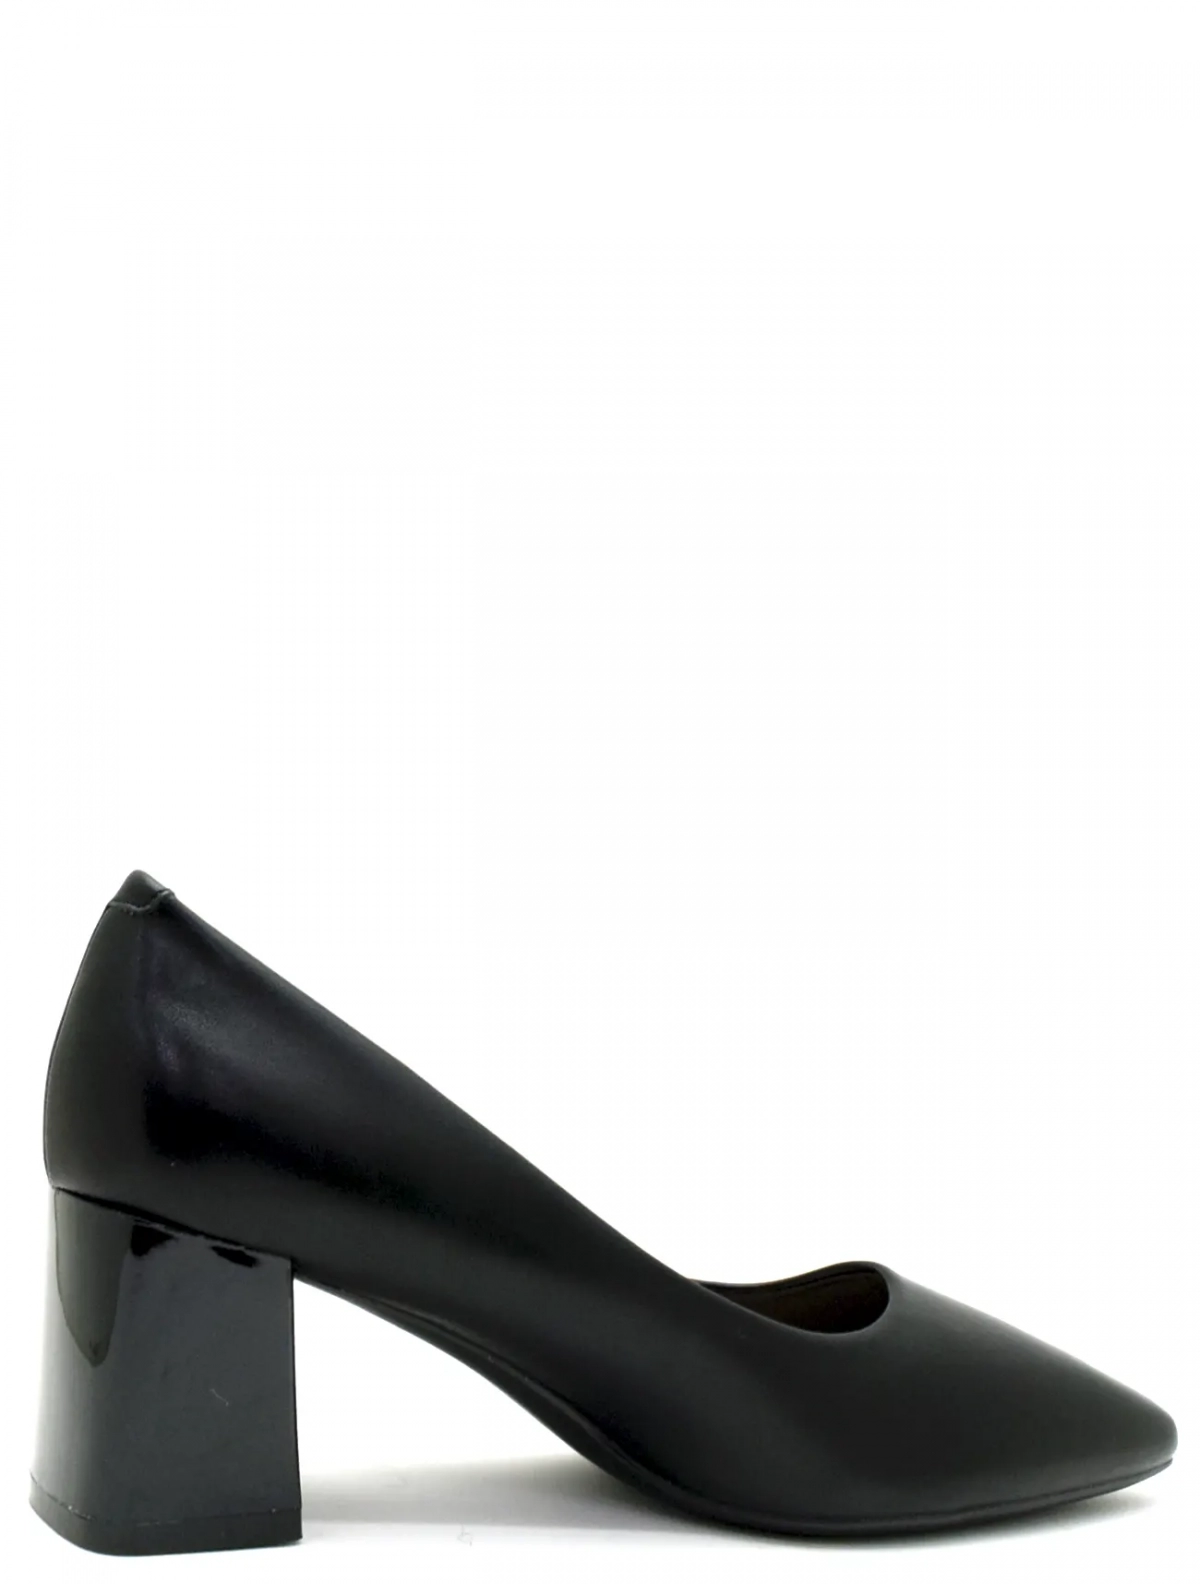 UILLIRRY FDU21-2 женские туфли